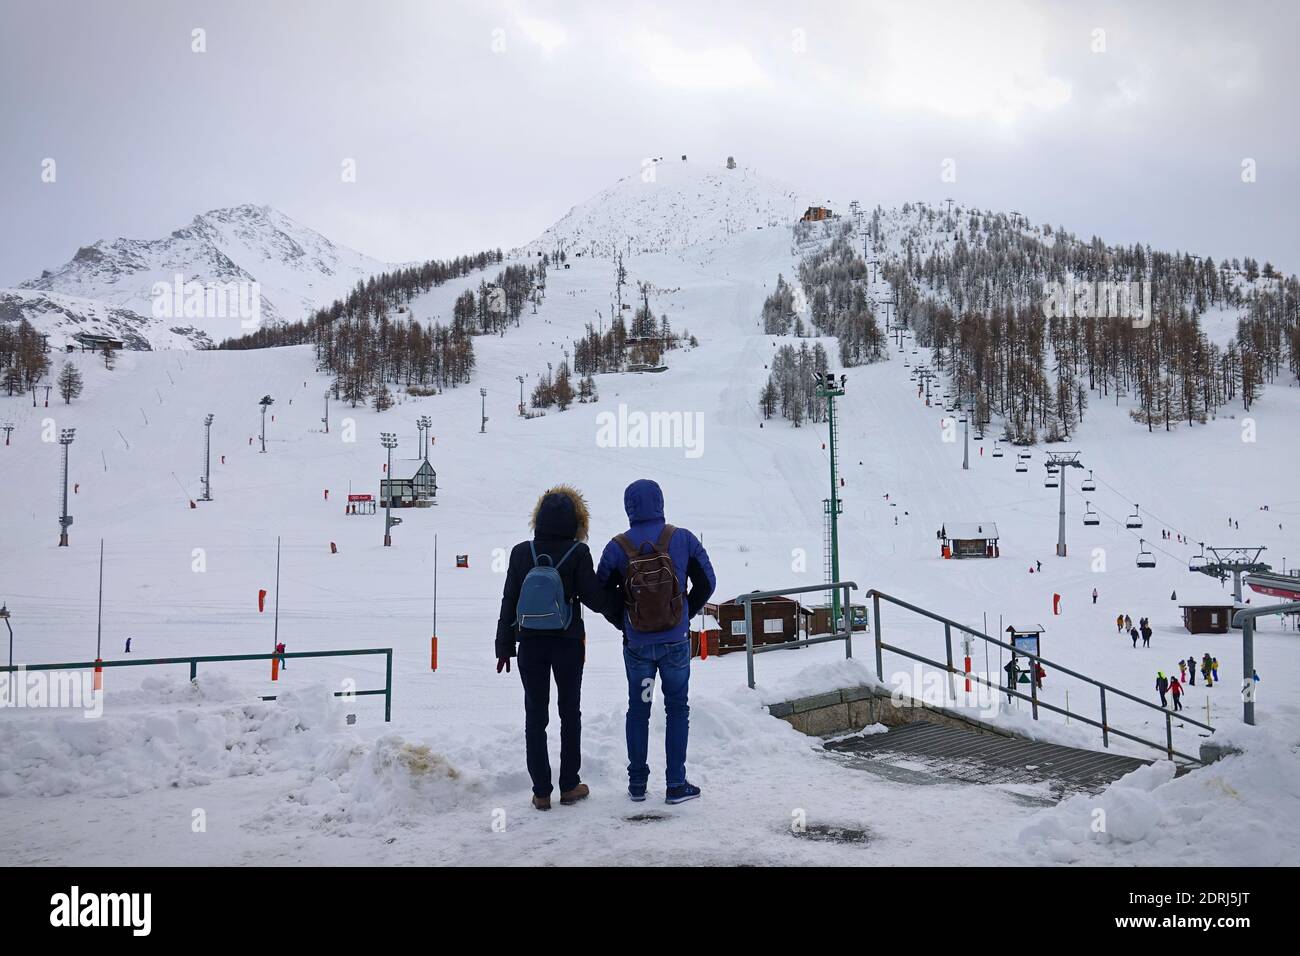 Skipisten wegen Pandemie über Weihnachten geschlossen, Paar schaut auf trostlos leere Pisten. Sestriere, Italien - Dezember 2020 Stockfoto